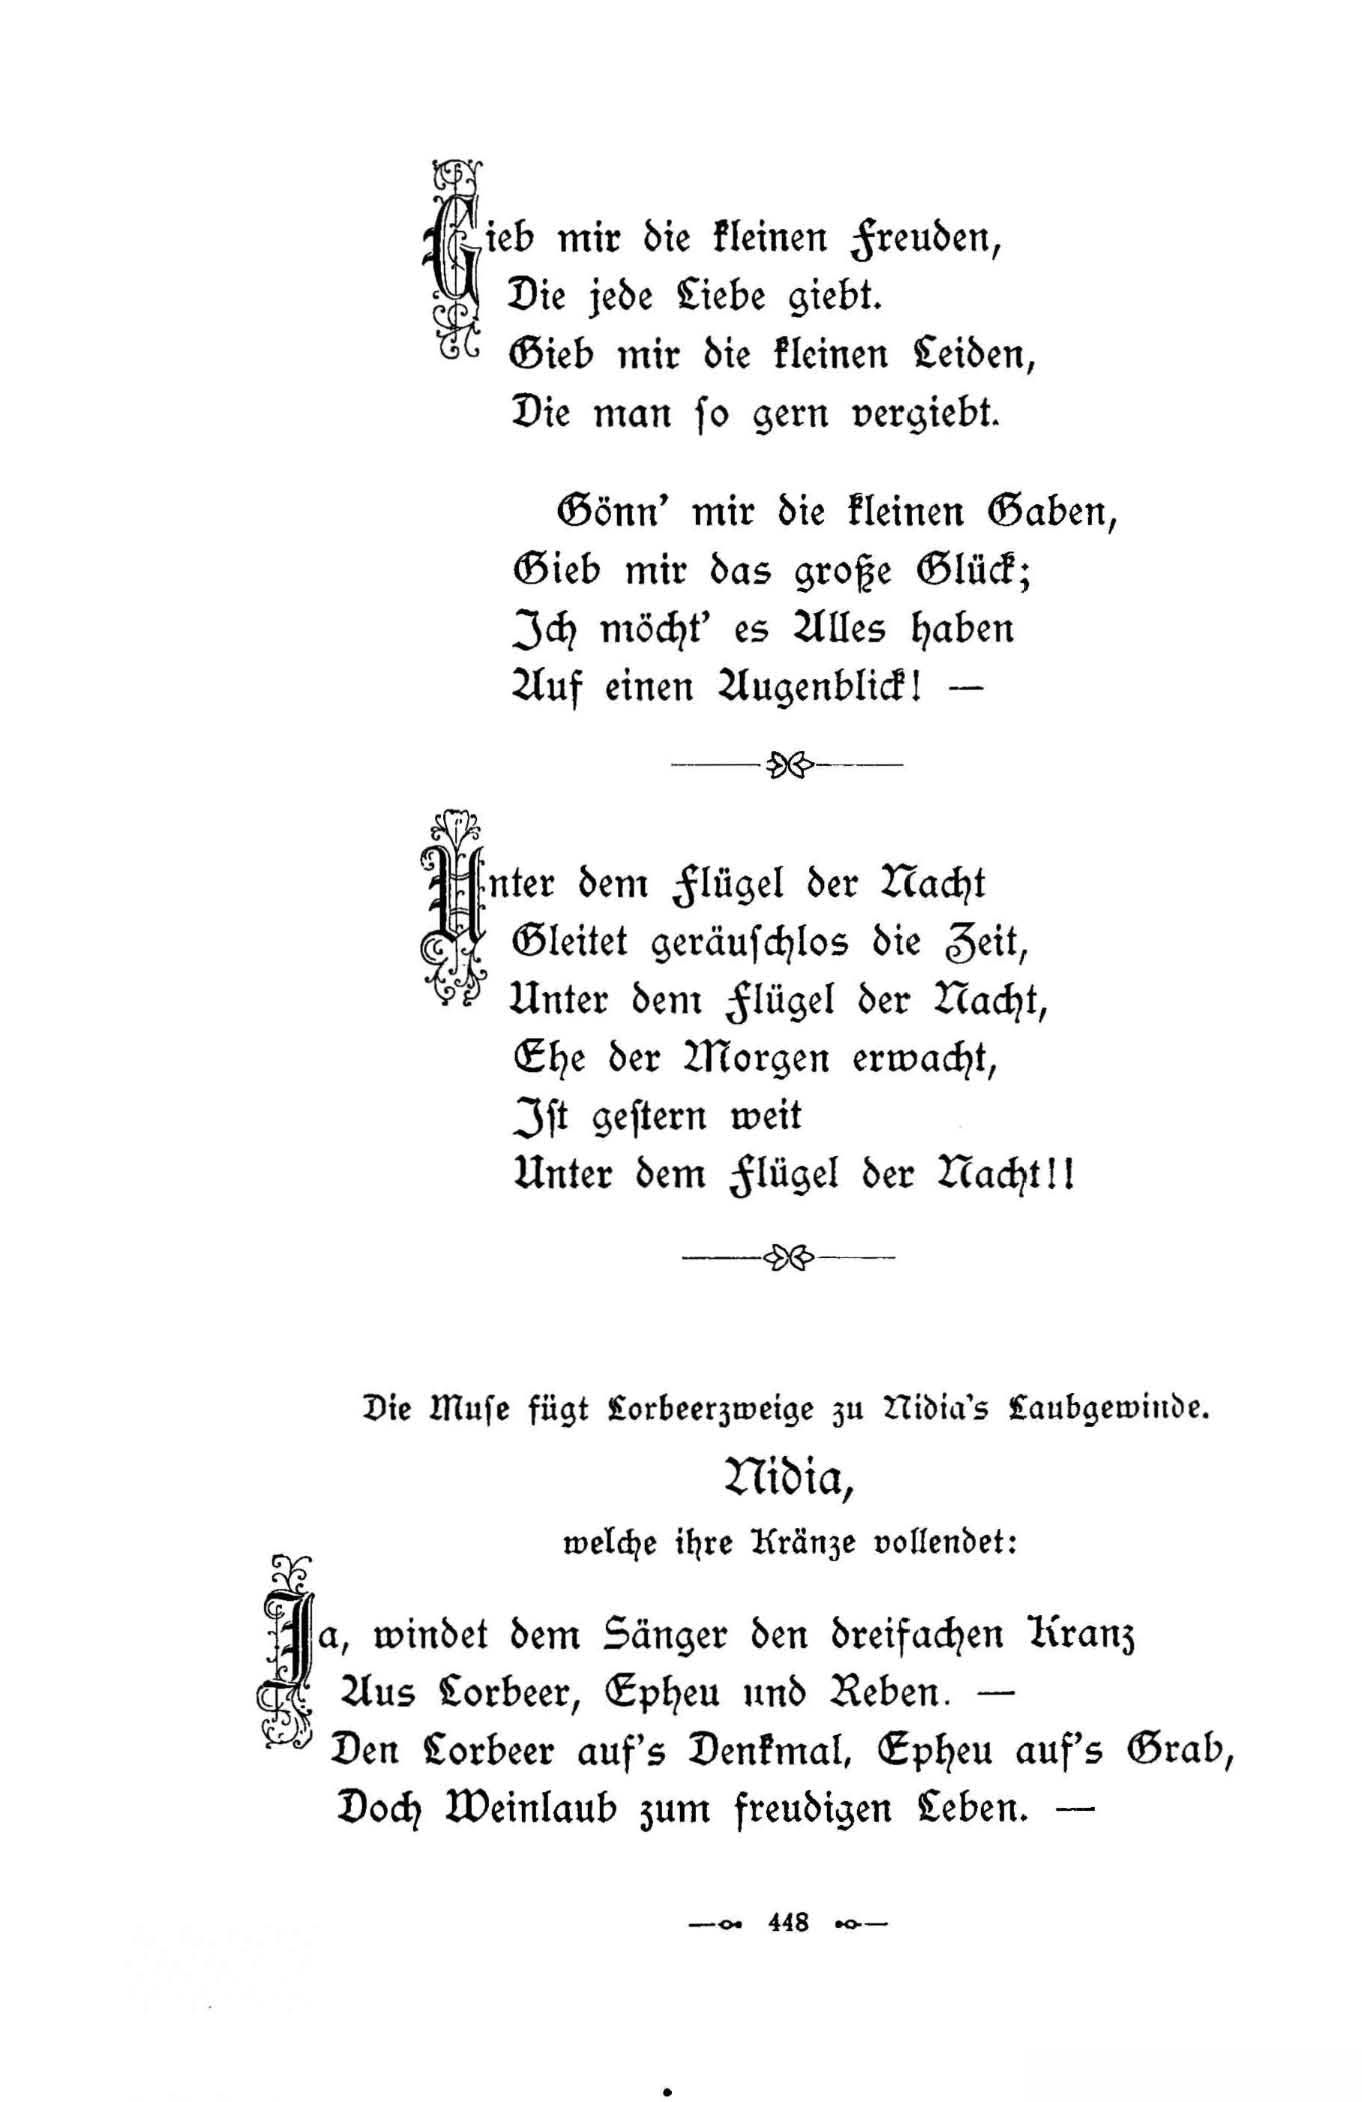 Die Muse fügt Lorbeerzweige zu Nidia's Laubgewinde (1896) | 1. (448) Основной текст